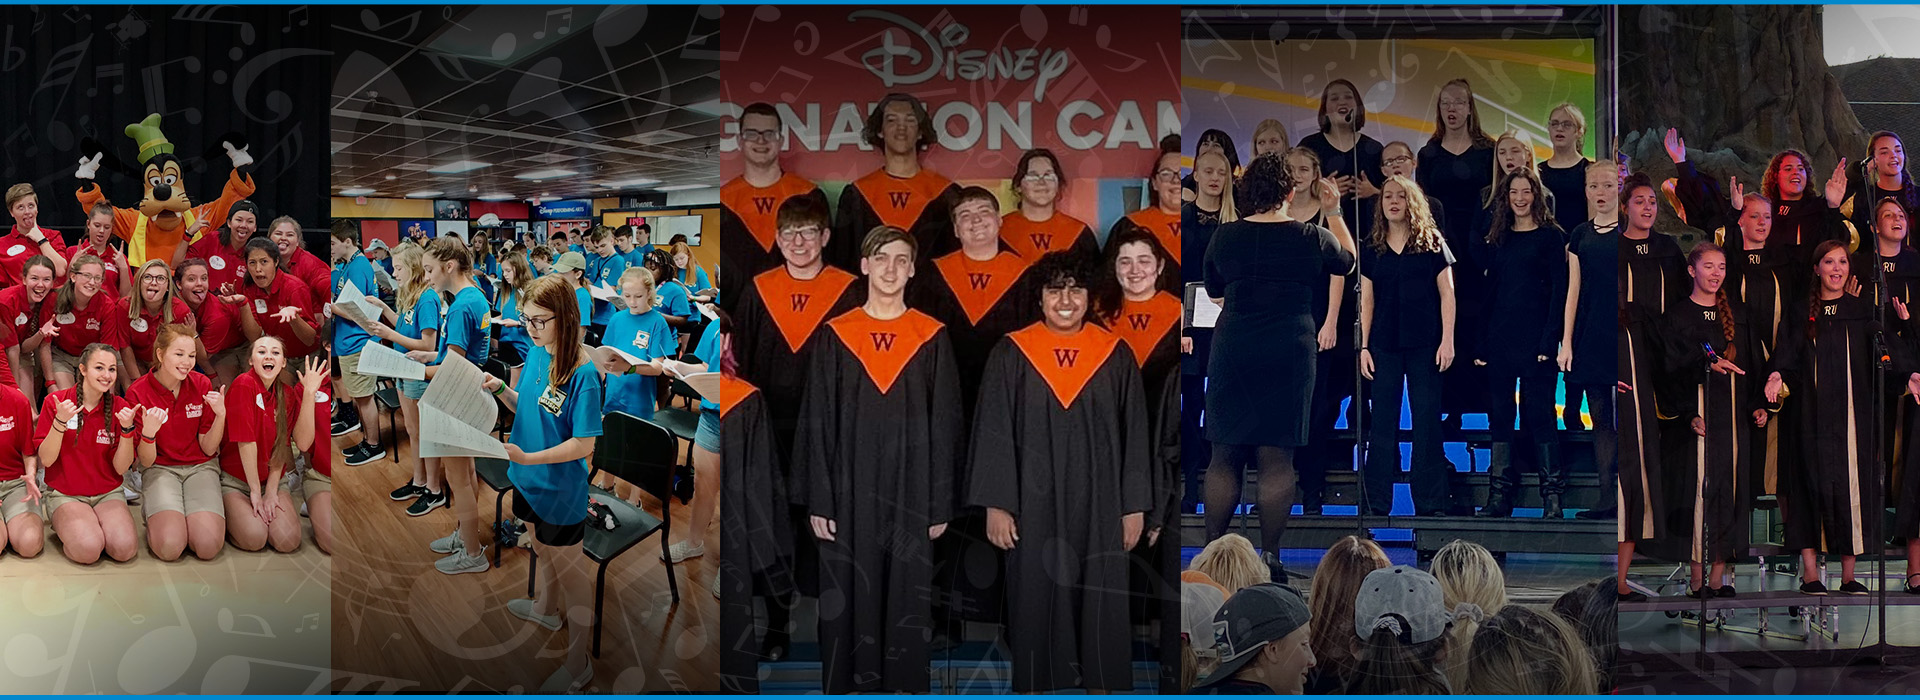 Disney Imagination Campus orchestra tours